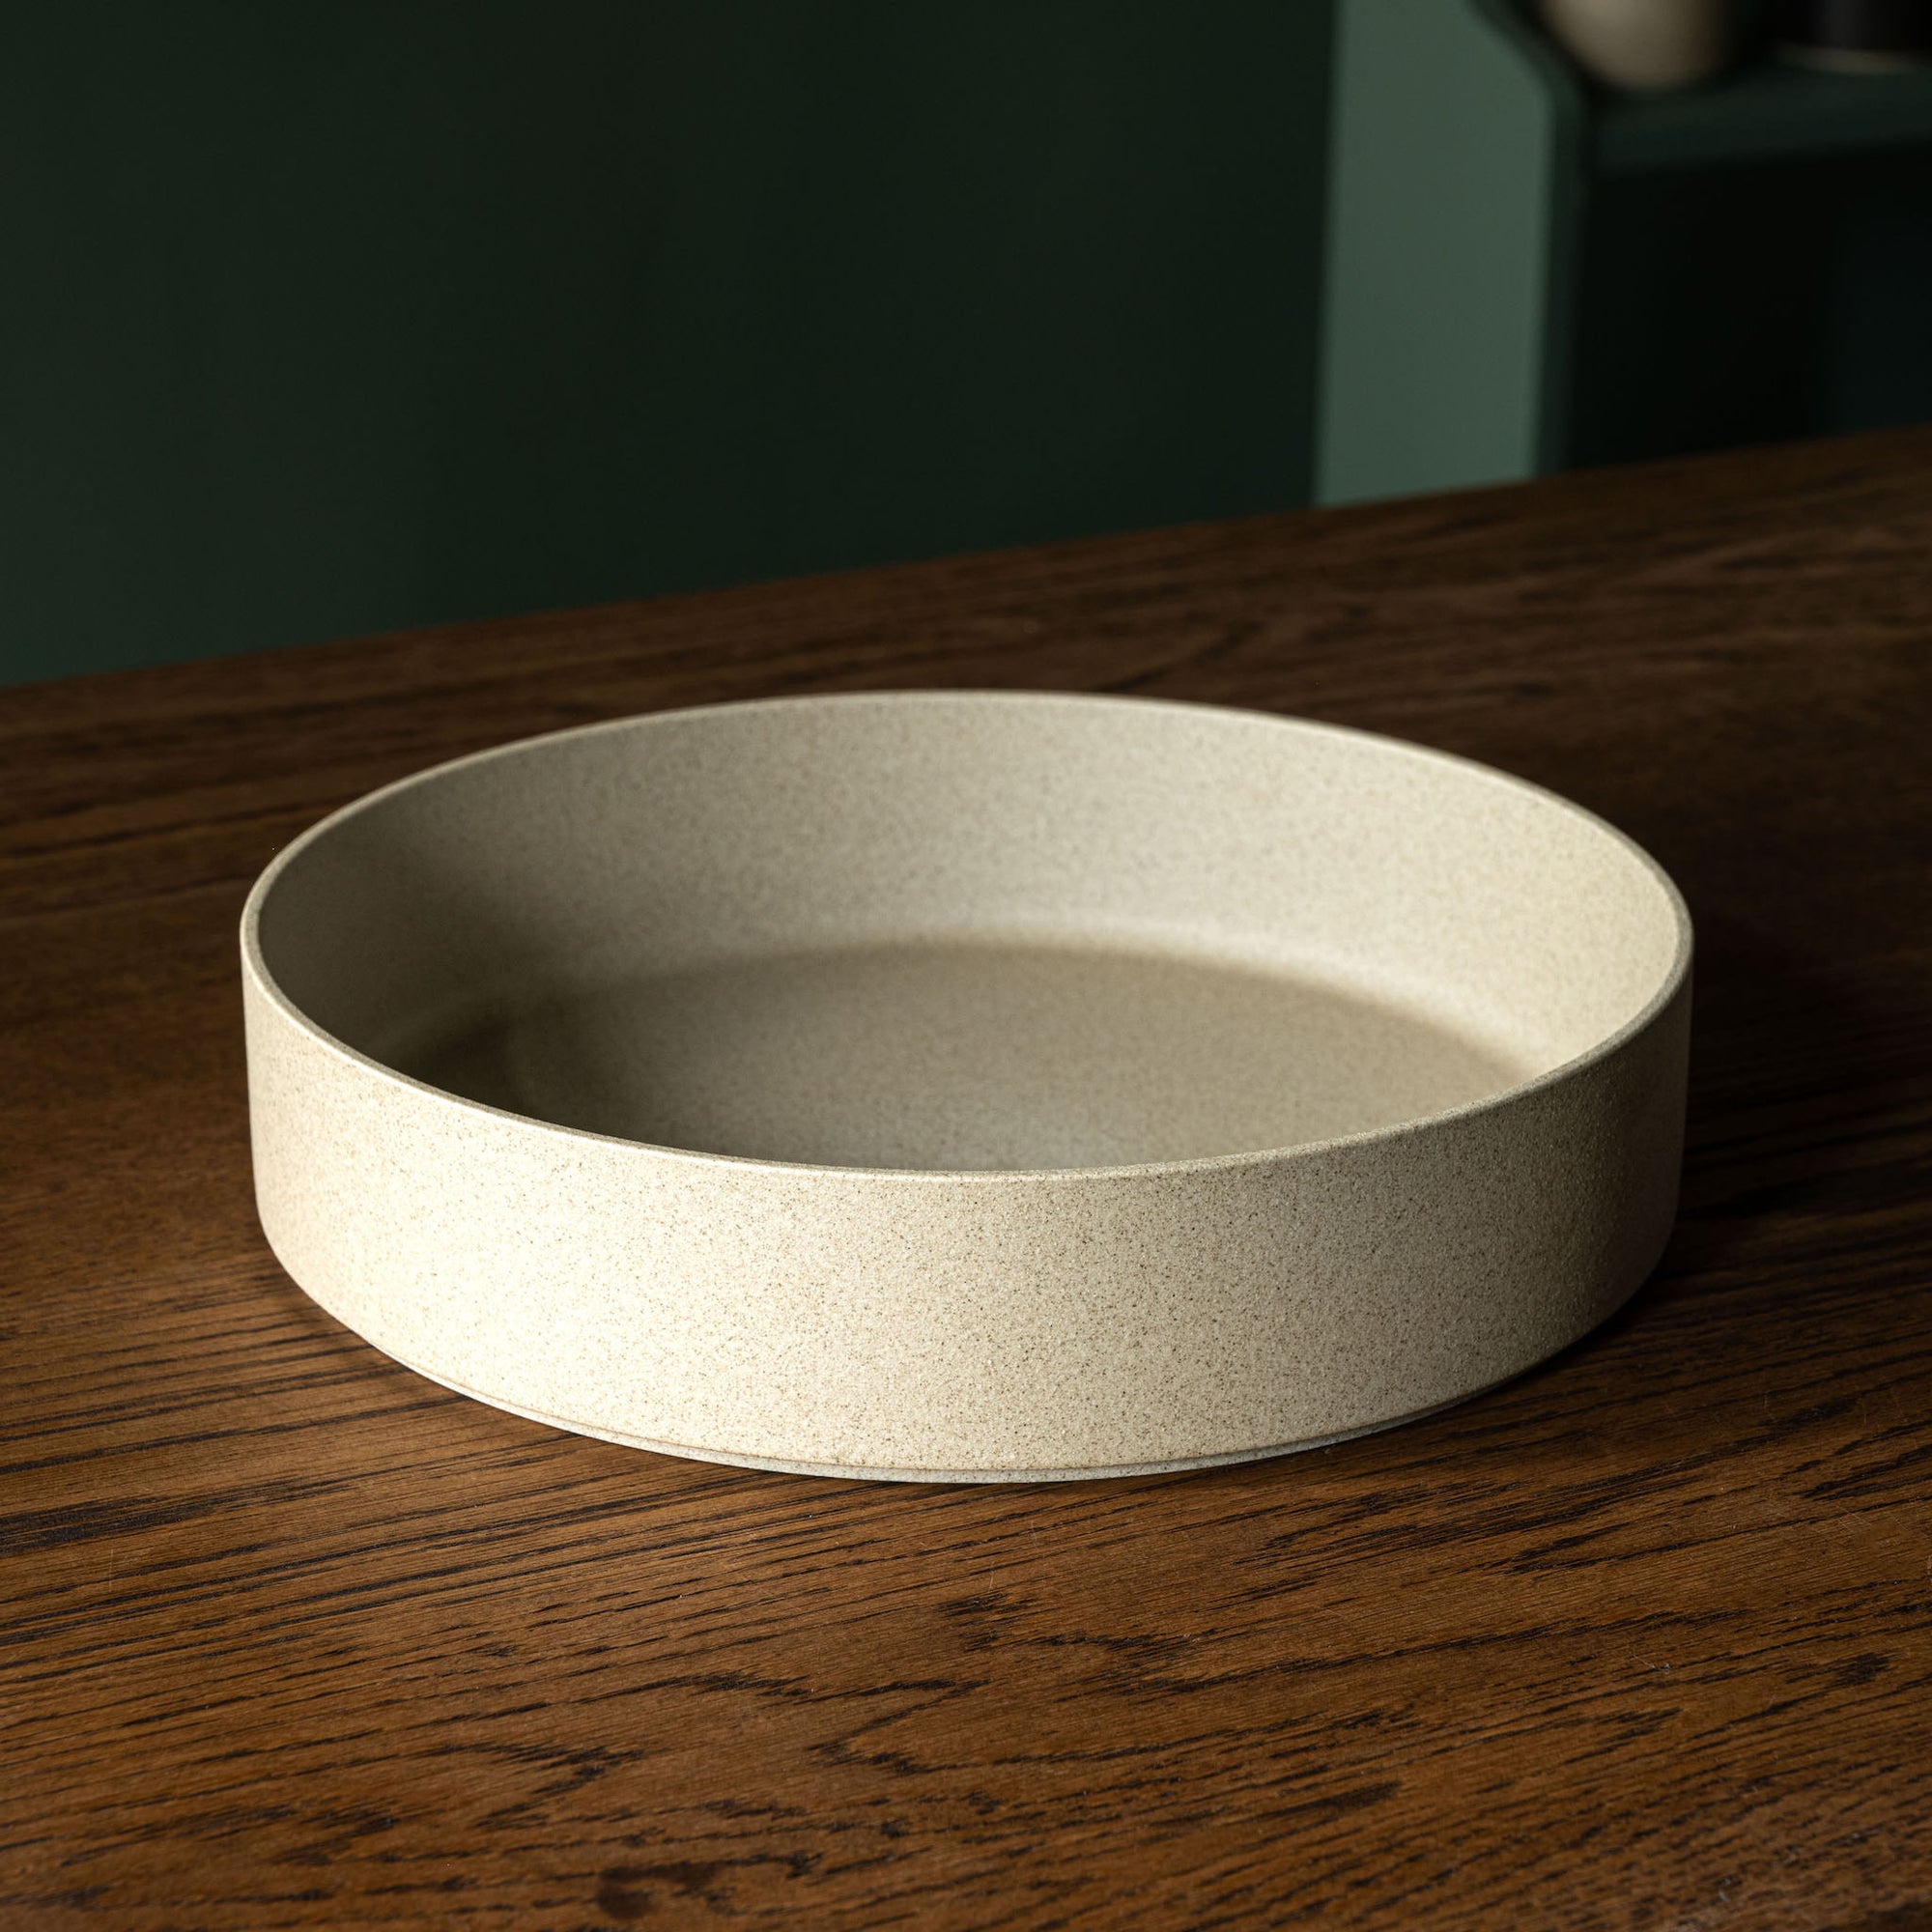 Hasami Porcelain natural serving / display bowl